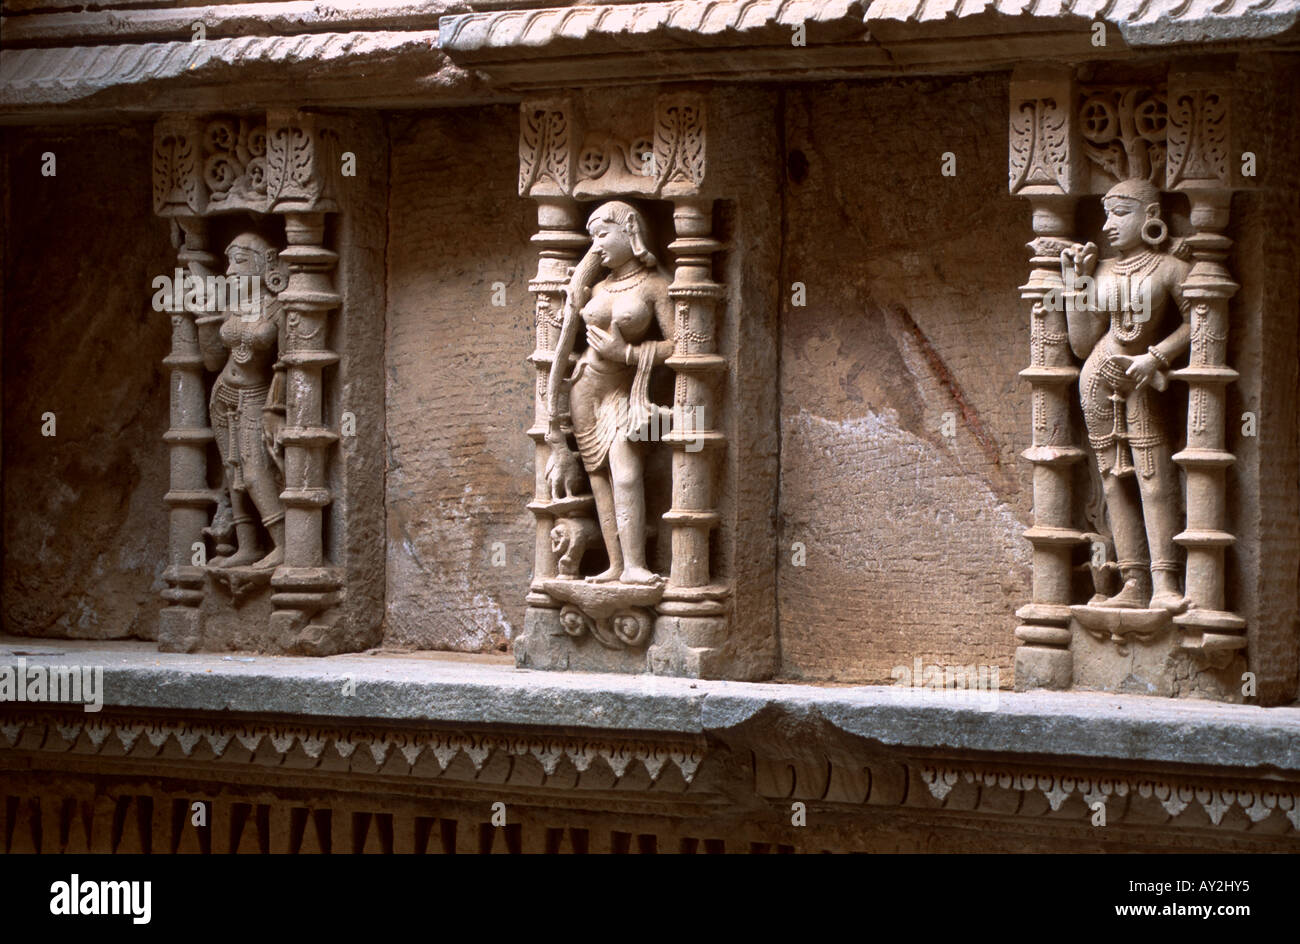 Figures de pierre sculptée, Patan étape puits appelé le Rani ki Vav, Gujarat, Inde. Construit autour de 1050 A.D. Banque D'Images